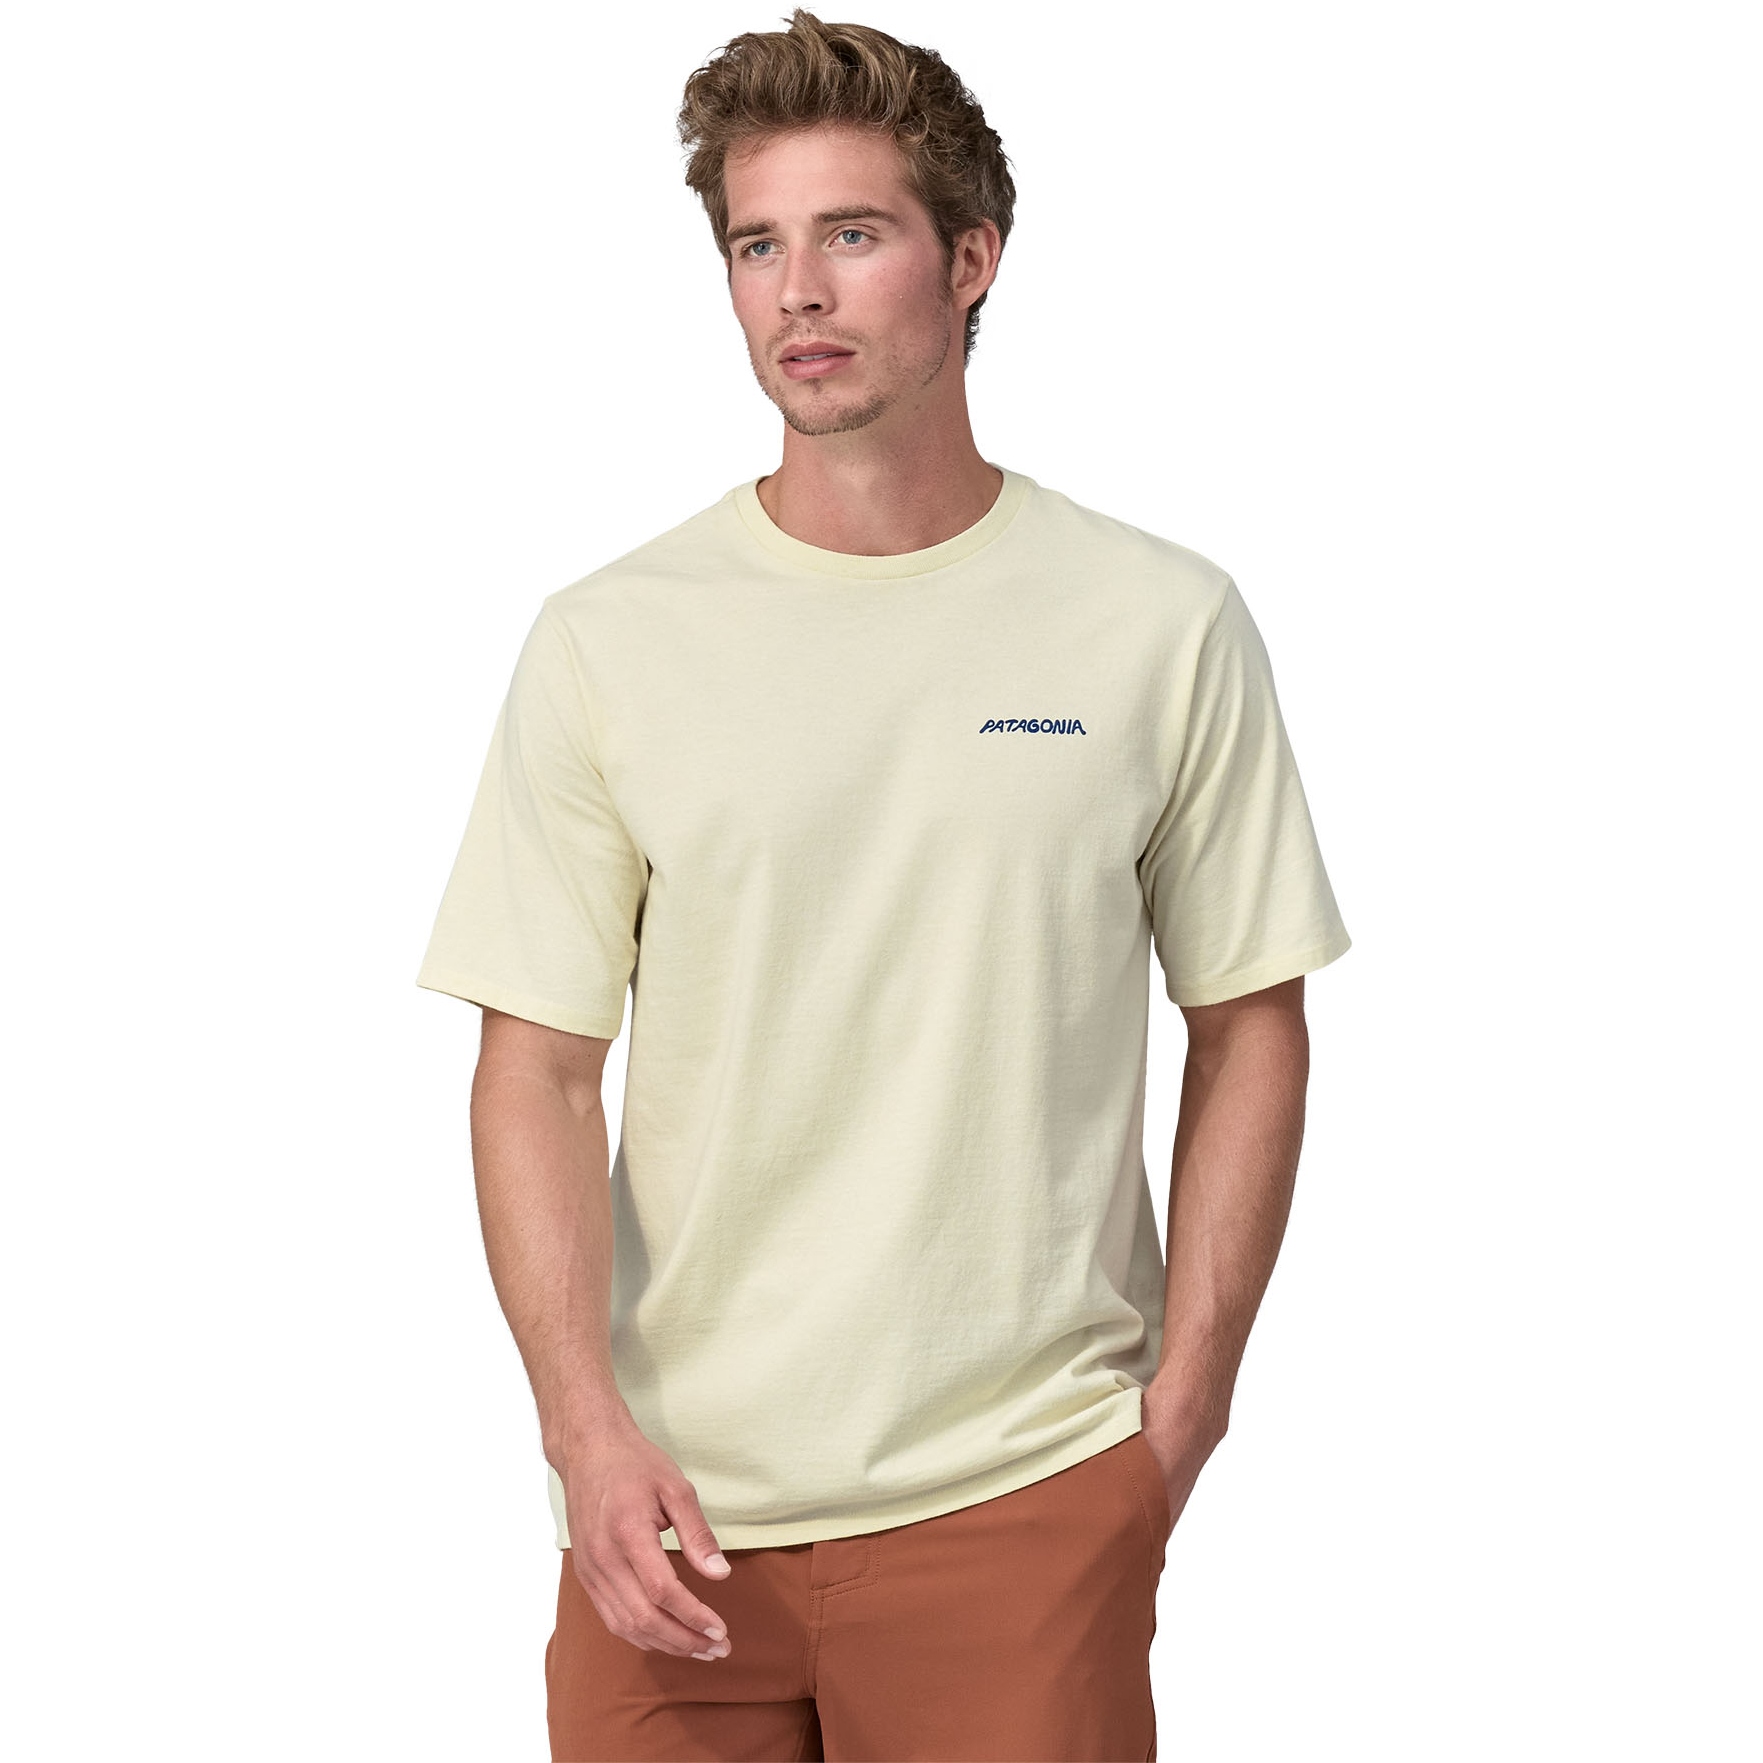 Produktbild von Patagonia Sunrise Rollers Responsibili-Tee T-Shirt Herren - Birch White